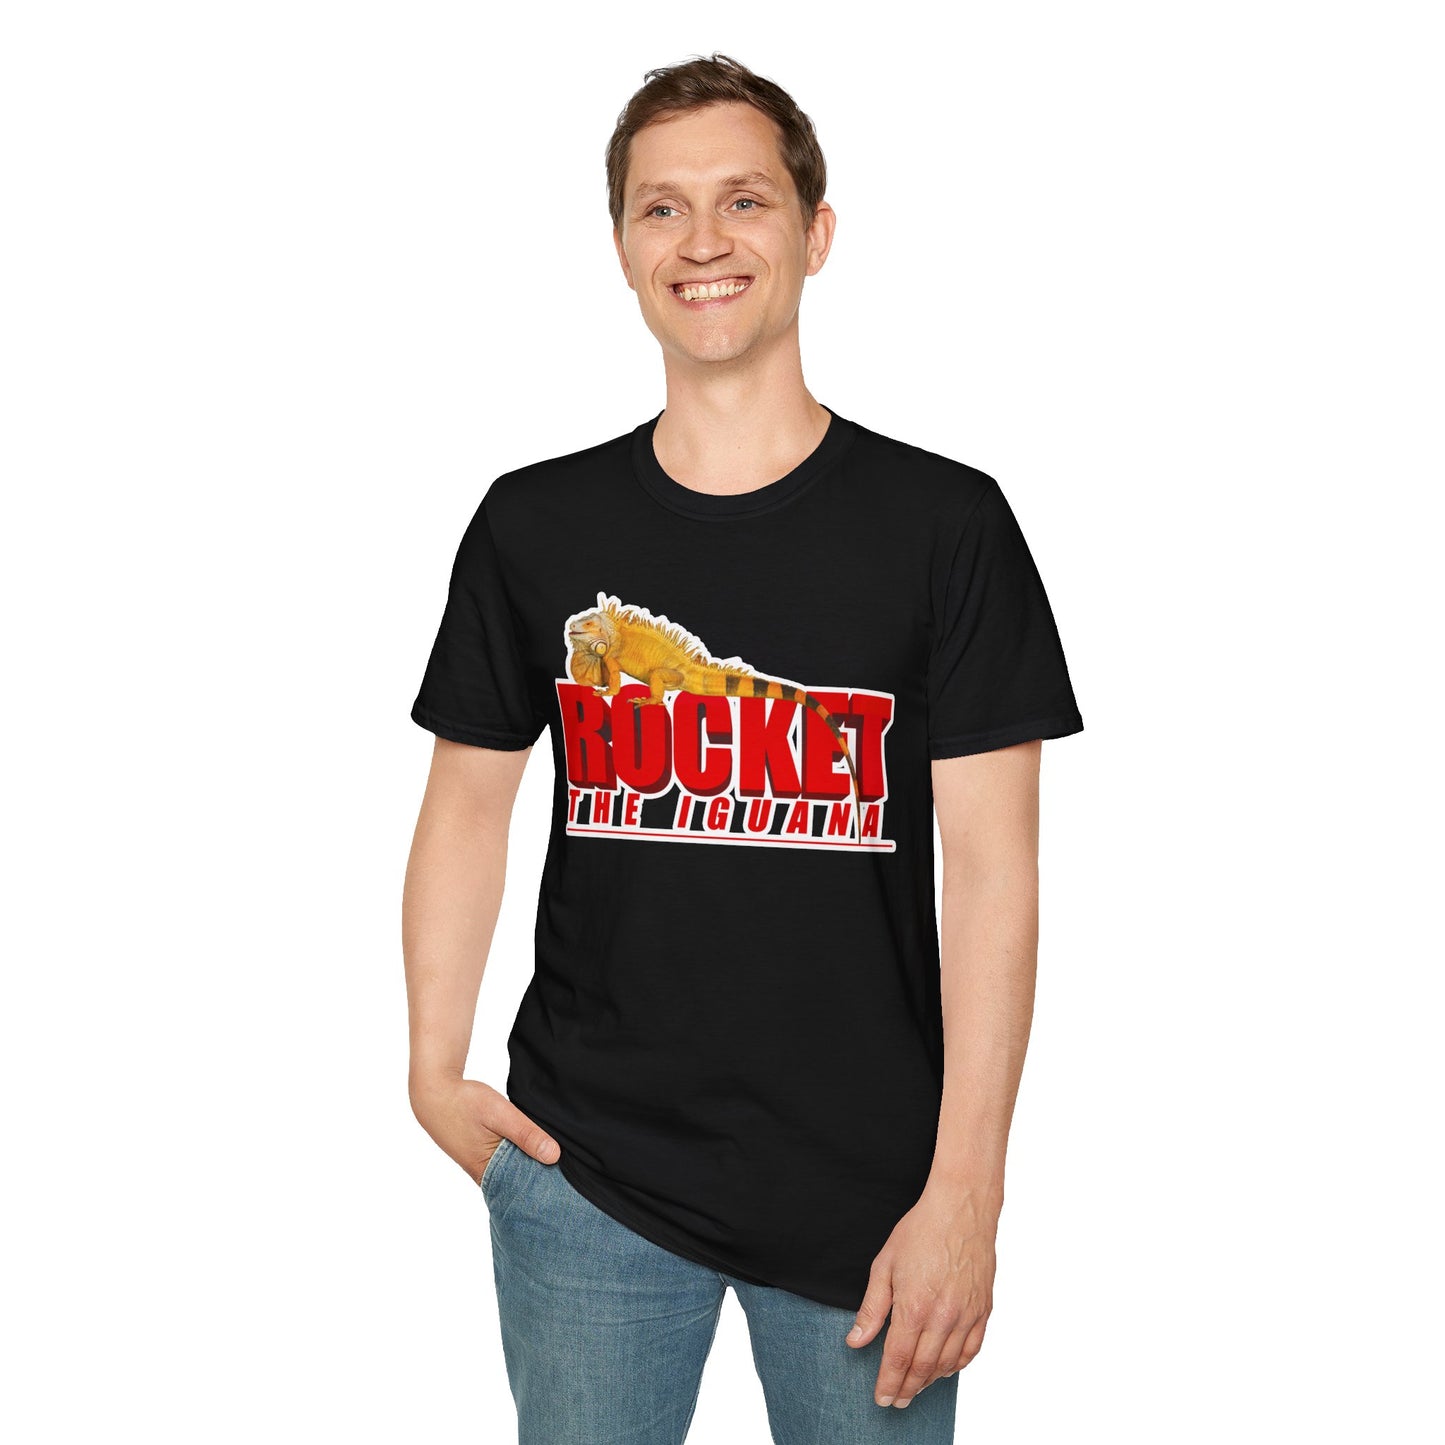 Rocket The Iguana T-Shirt (stroked)